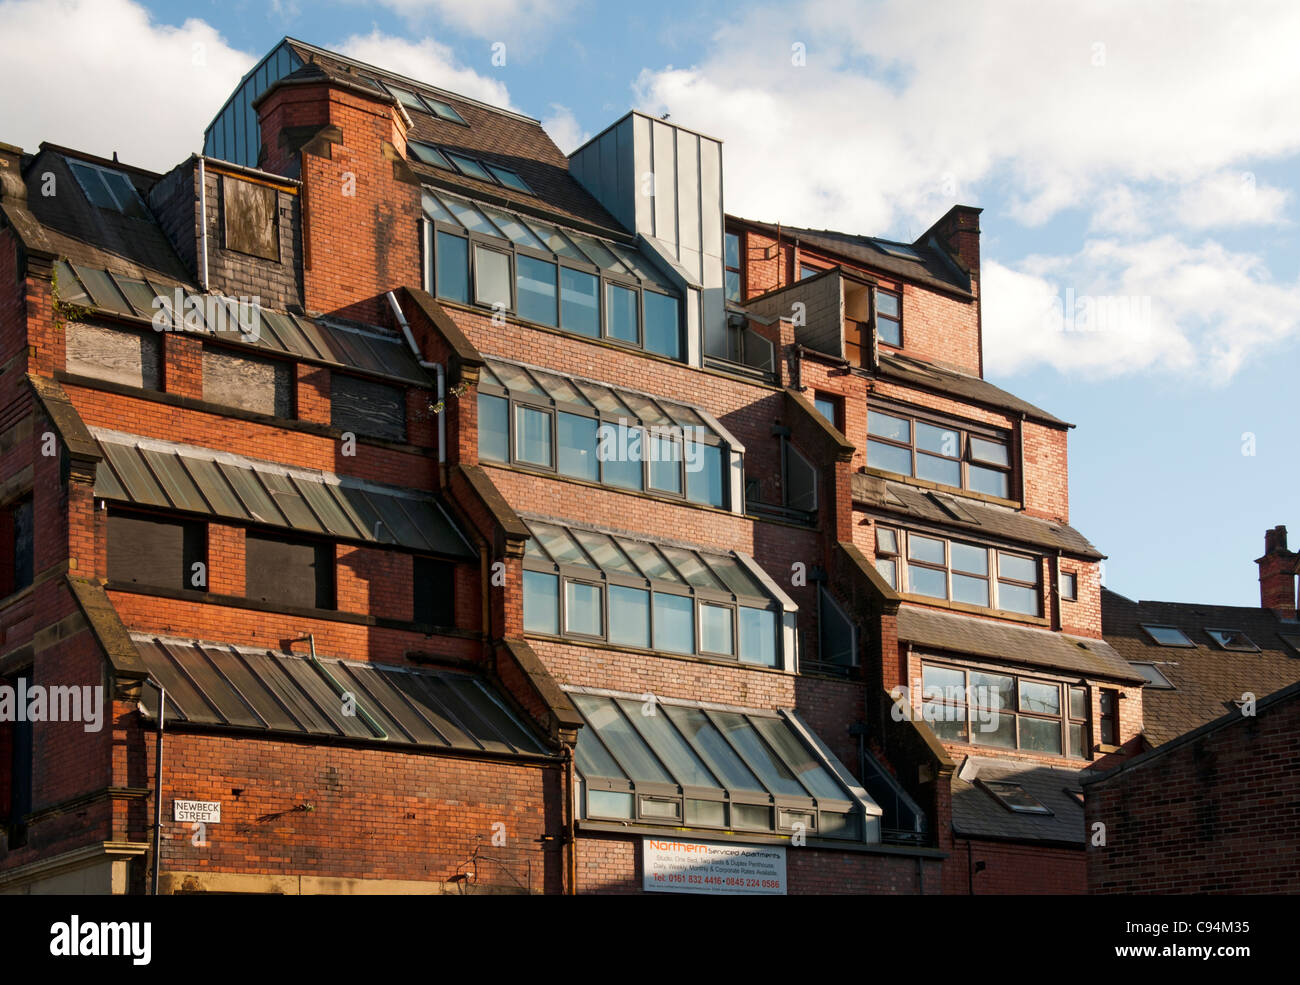 Stovells Buildings. Shudehill, Manchester, England, UK. Former workshops, the stepped design allowed in more light. Stock Photo